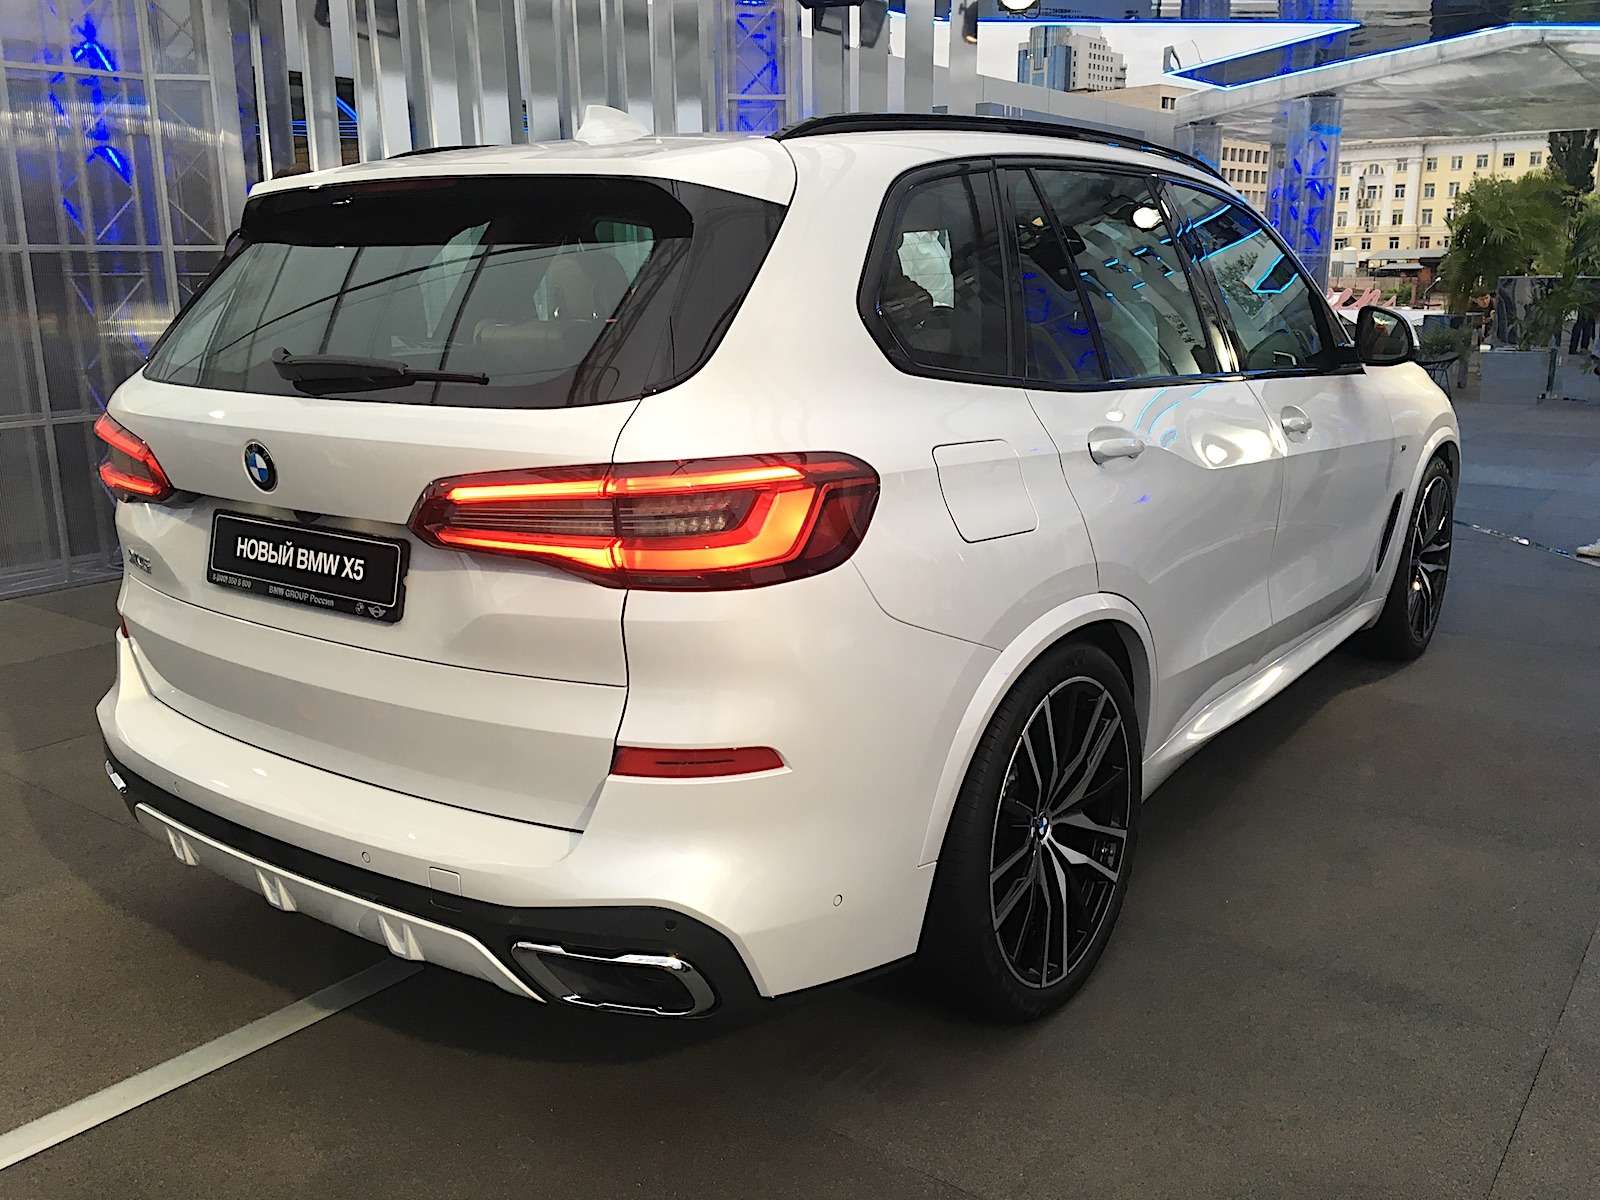 Абсолютно новый BMW X5 всплыл в Москве. Задолго до официальной премьеры! — фото 889849